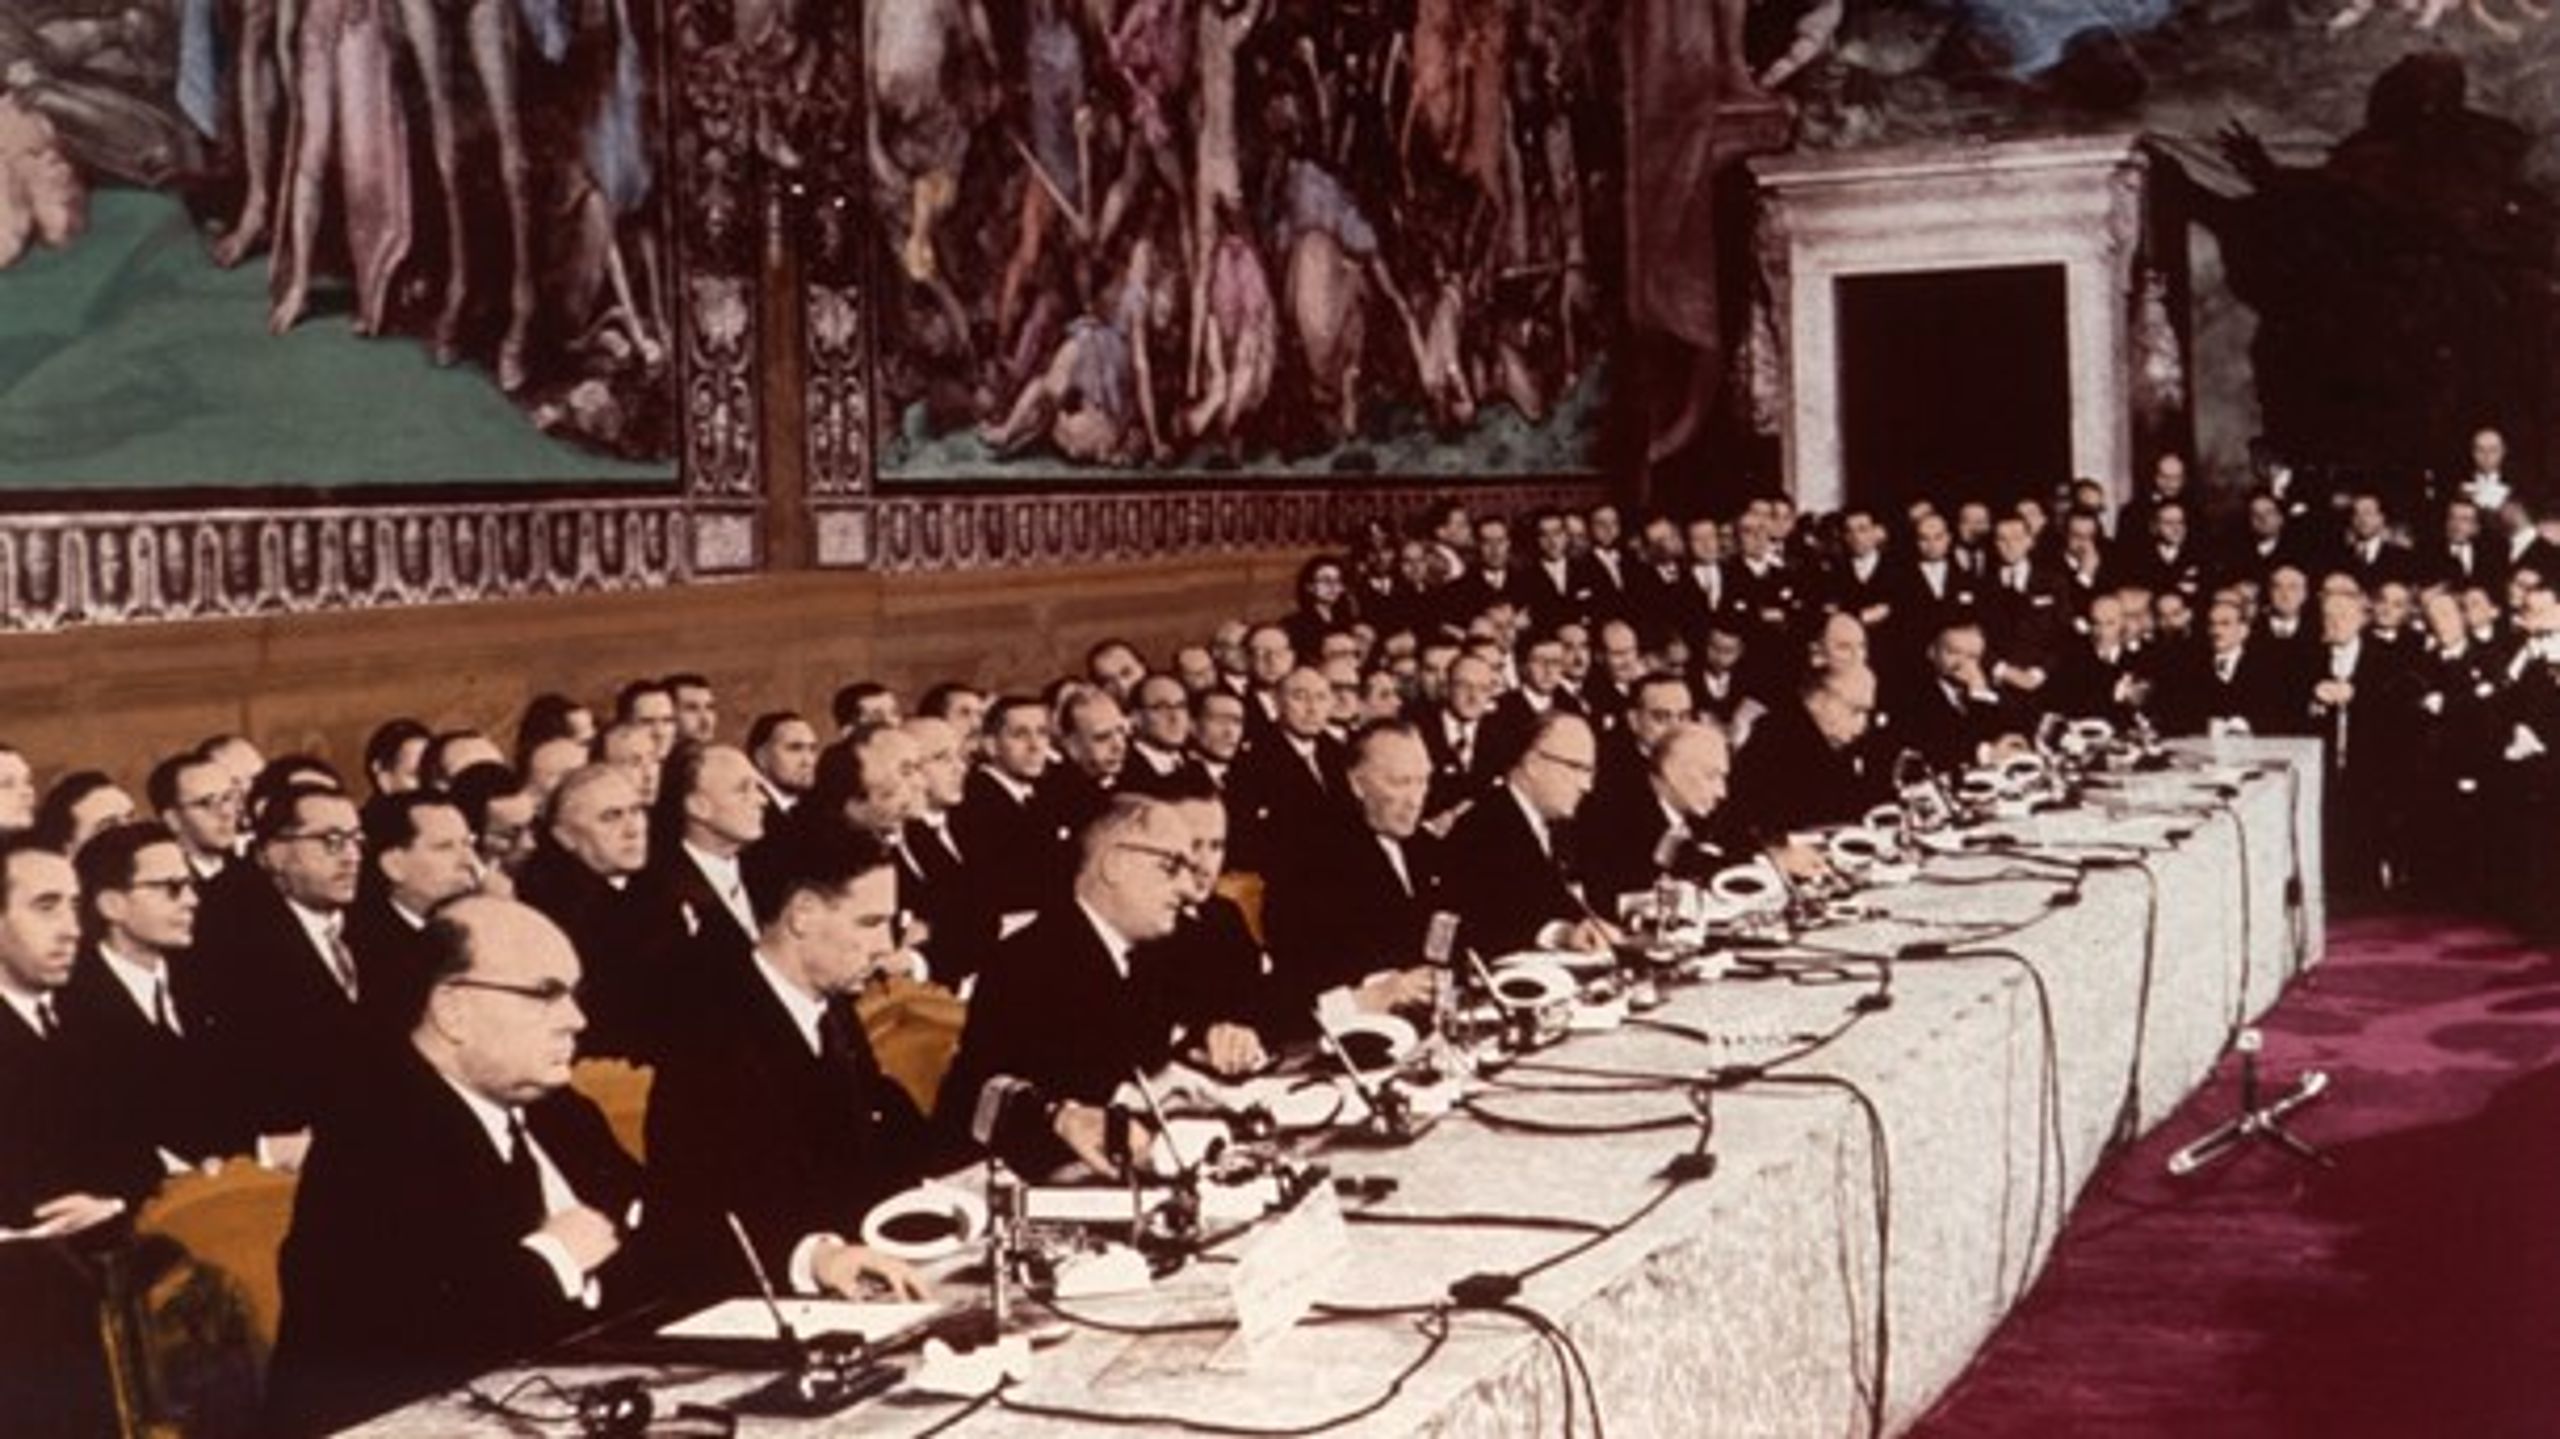 For 60 år siden skrev de seks grundlæggere af EU under på Rom-traktaten. Nu kommer 27 EU-ledere tilbage til byen for at bekræfte deres samarbejde i lyset af den forestående britiske exit fra Unionen.